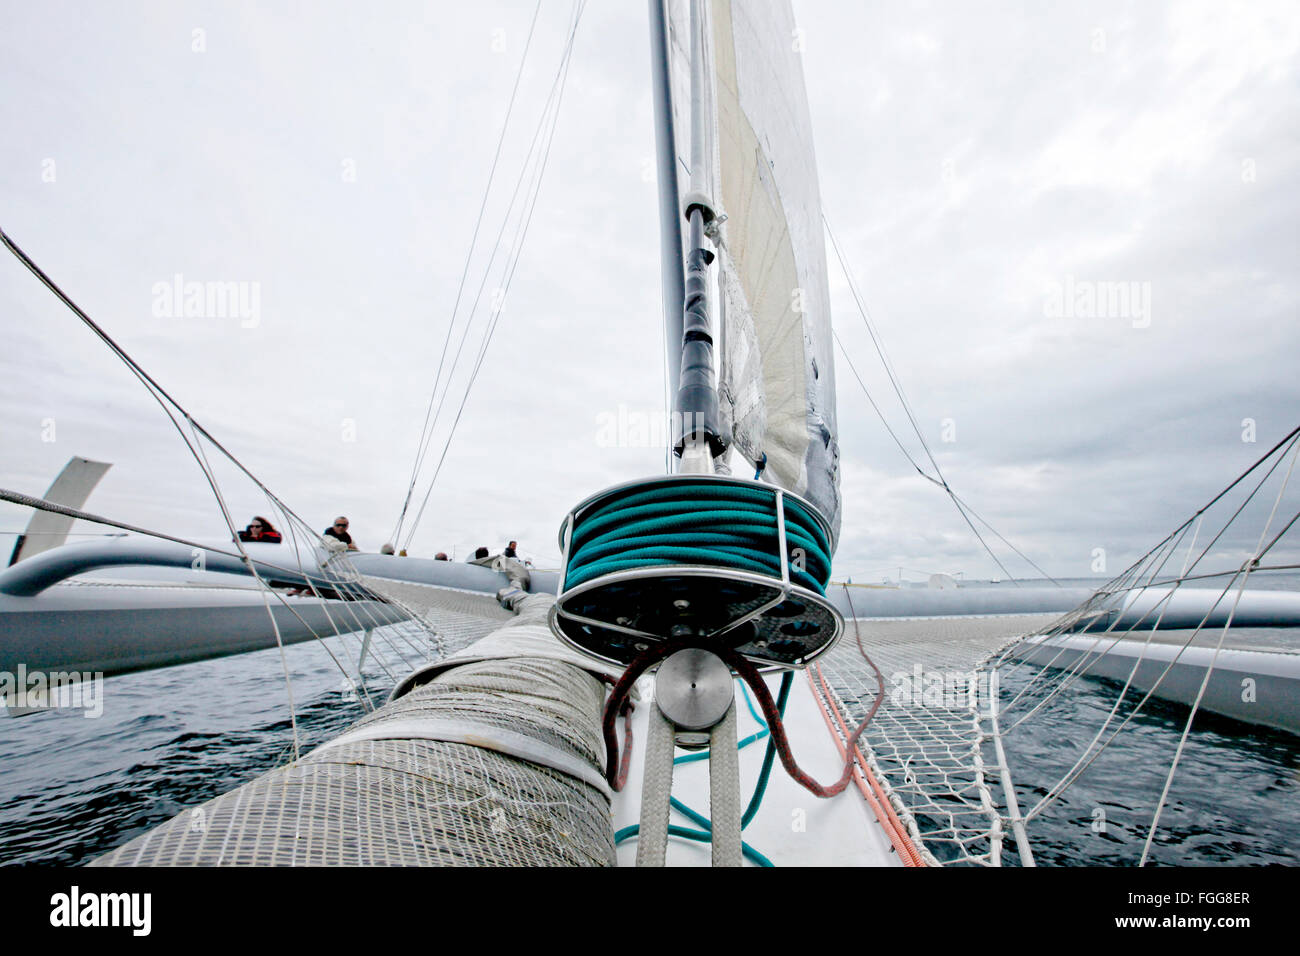 Con Alain Gautier a bordo dell'orma 60 sensazione Oceano, Lorient, Brittany, Francia. Foto Stock